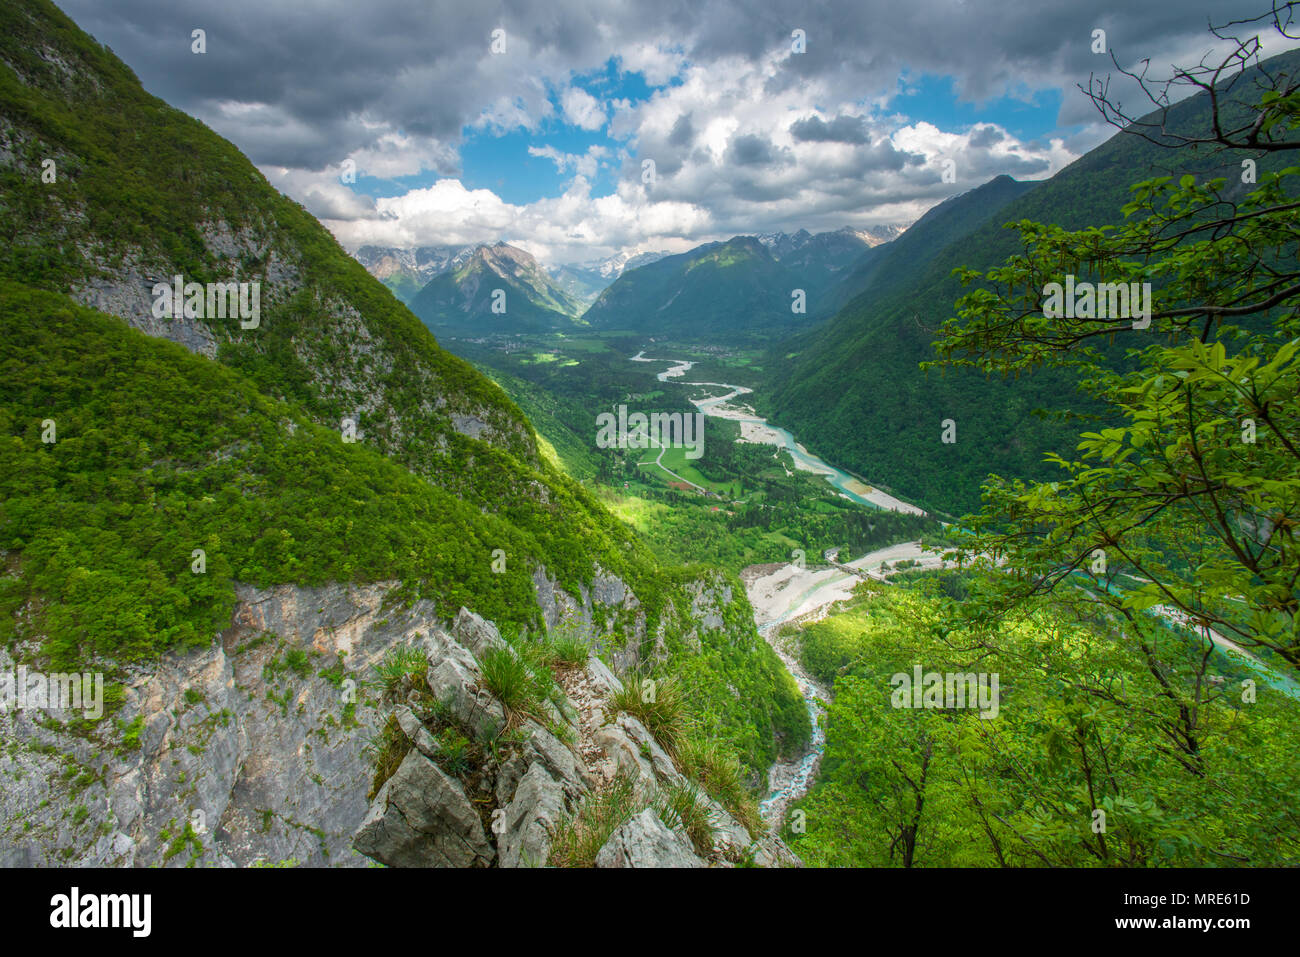 Incredibili vedute dell'Isonzo - Soca river valley dalla cima di una montagna. Ripida passeggiata sull orlo di una cascata, bellissime viste da sopra. Foto Stock